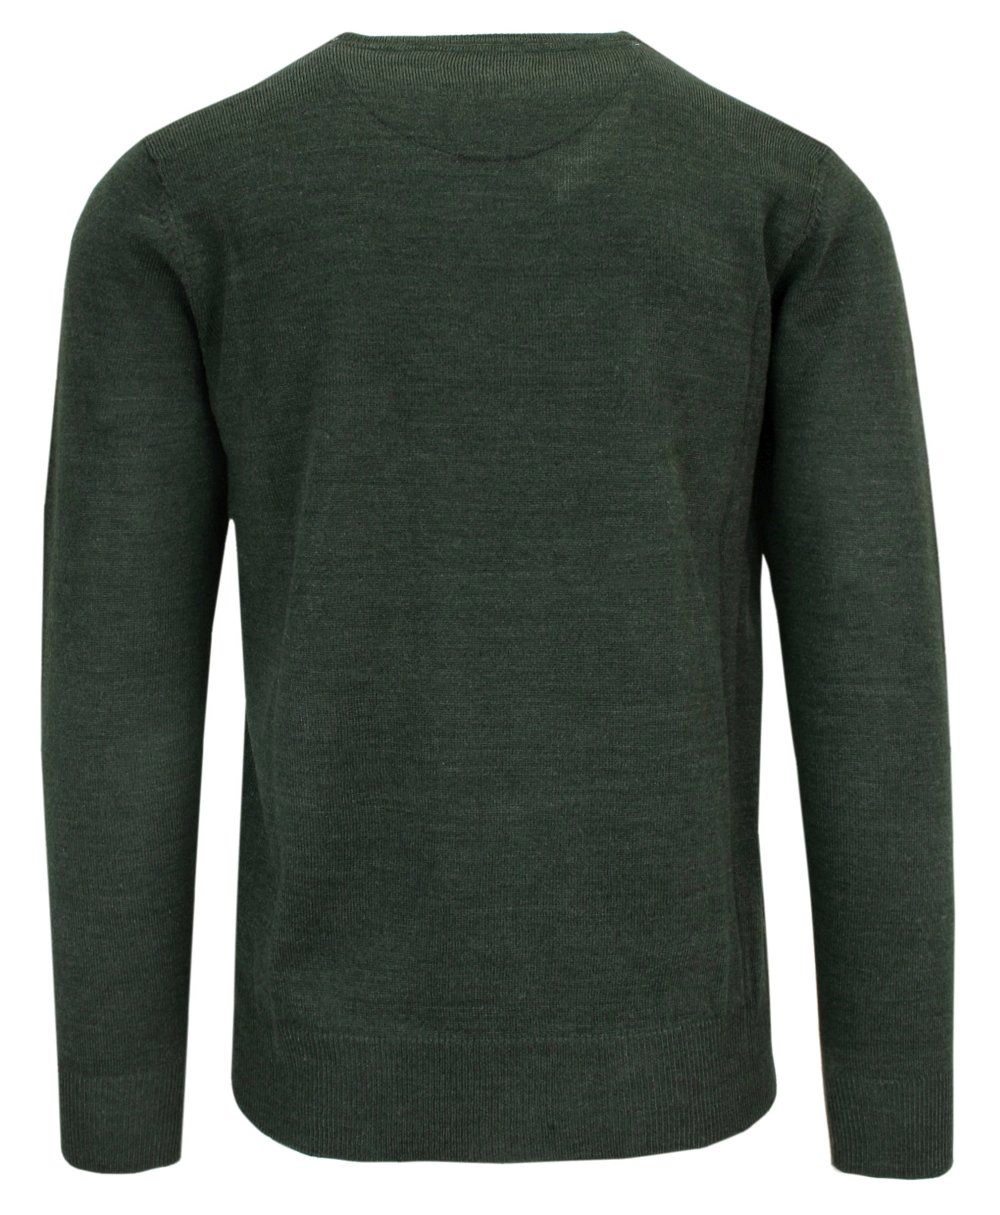 Sweter Zielony Melanżowy Khaki Okrągły Dekolt Męski Jednokolorowy -BRAVE SOUL